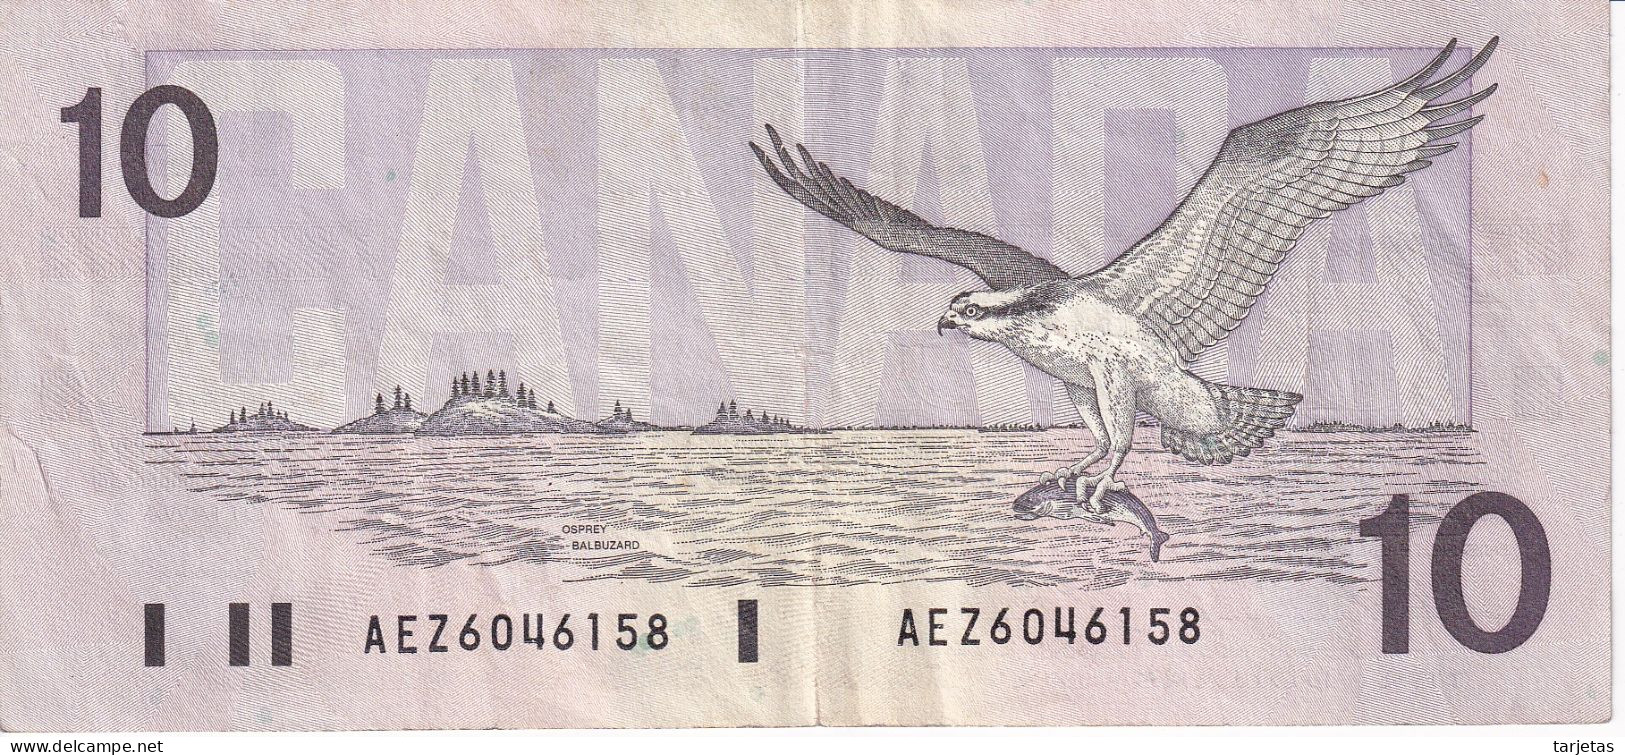 BILLETE DE CANADA DE 10 DOLLARS DEL AÑO 1989 (BANKNOTE) - Canada